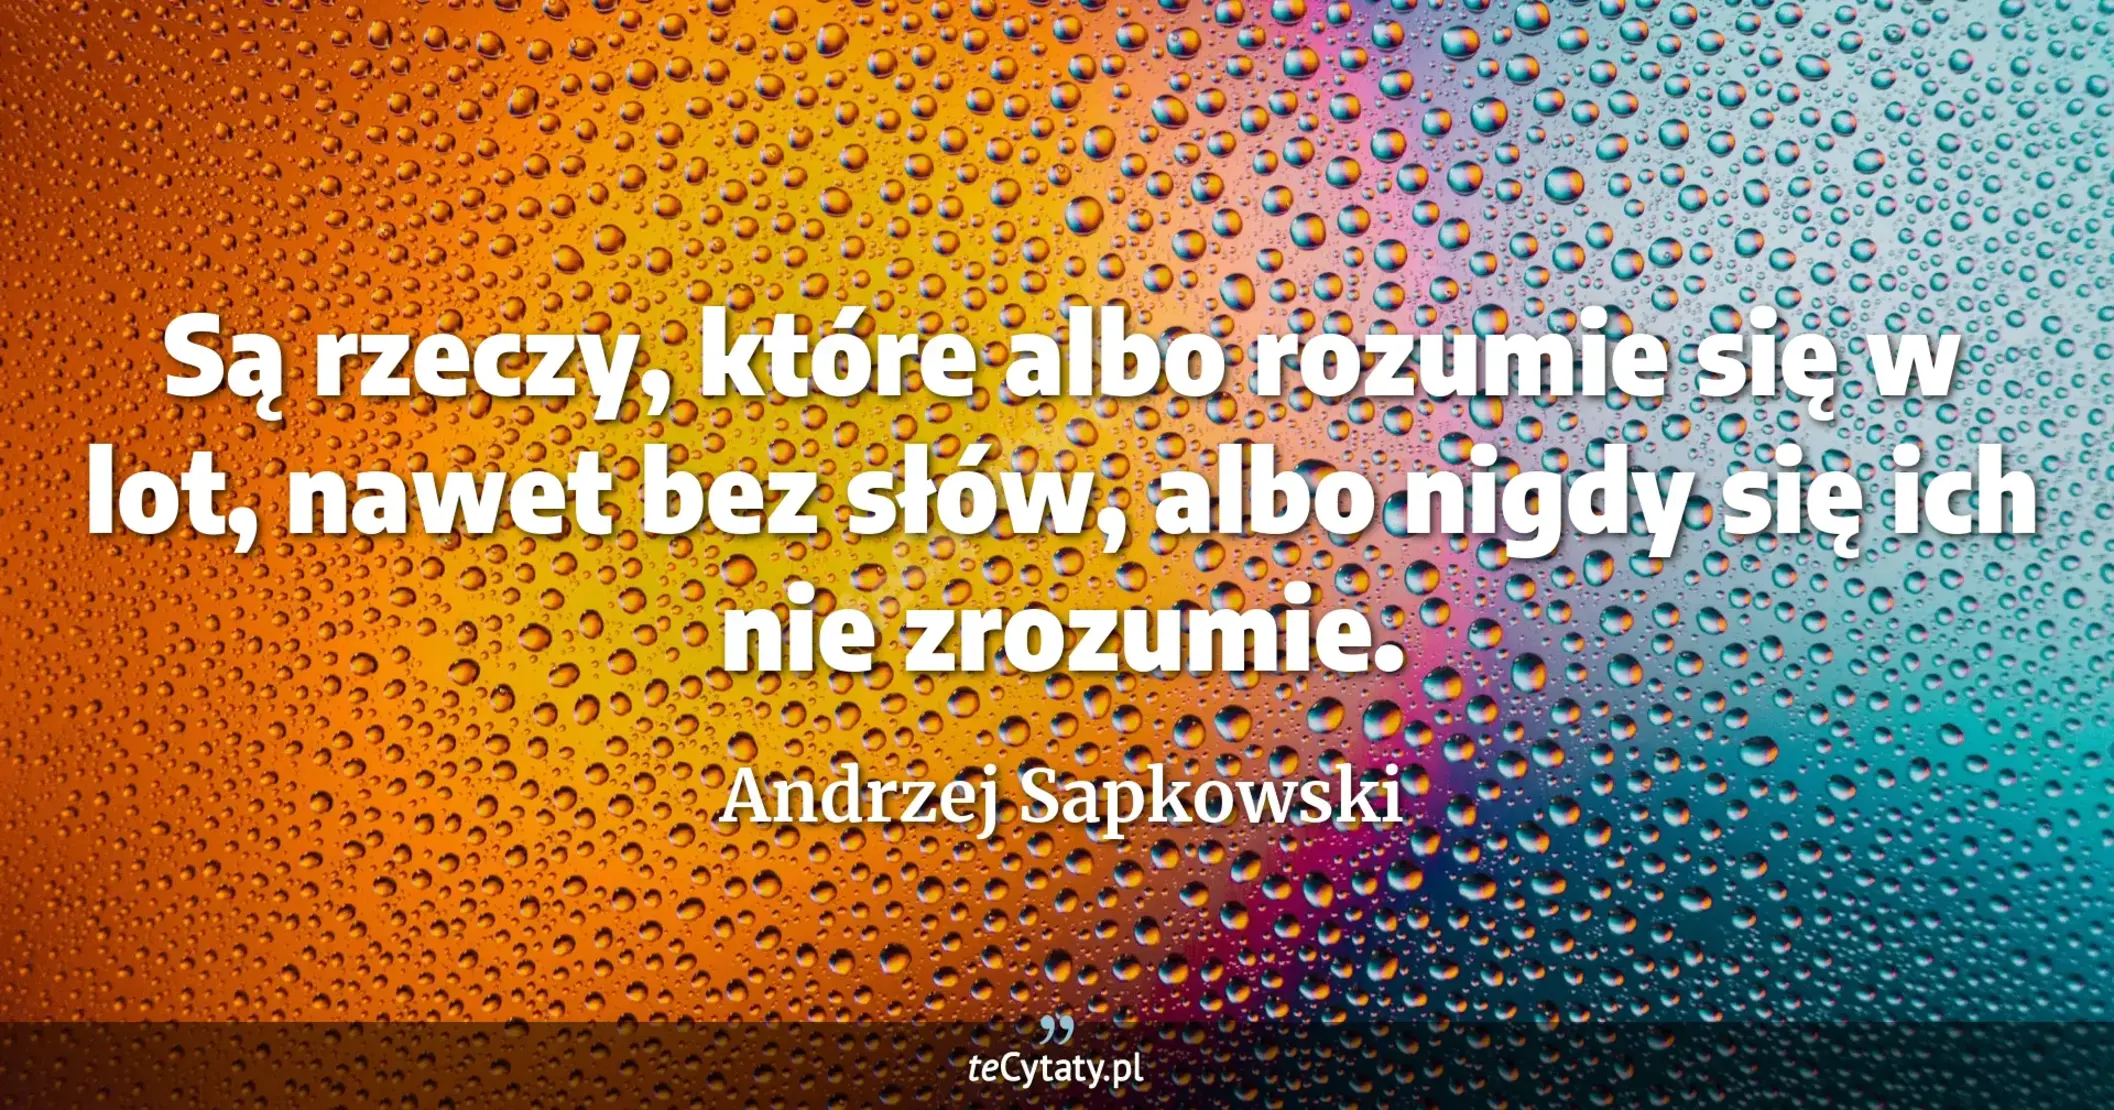 Są rzeczy, które albo rozumie się w lot, nawet bez słów, albo nigdy się ich nie zrozumie. - Andrzej Sapkowski